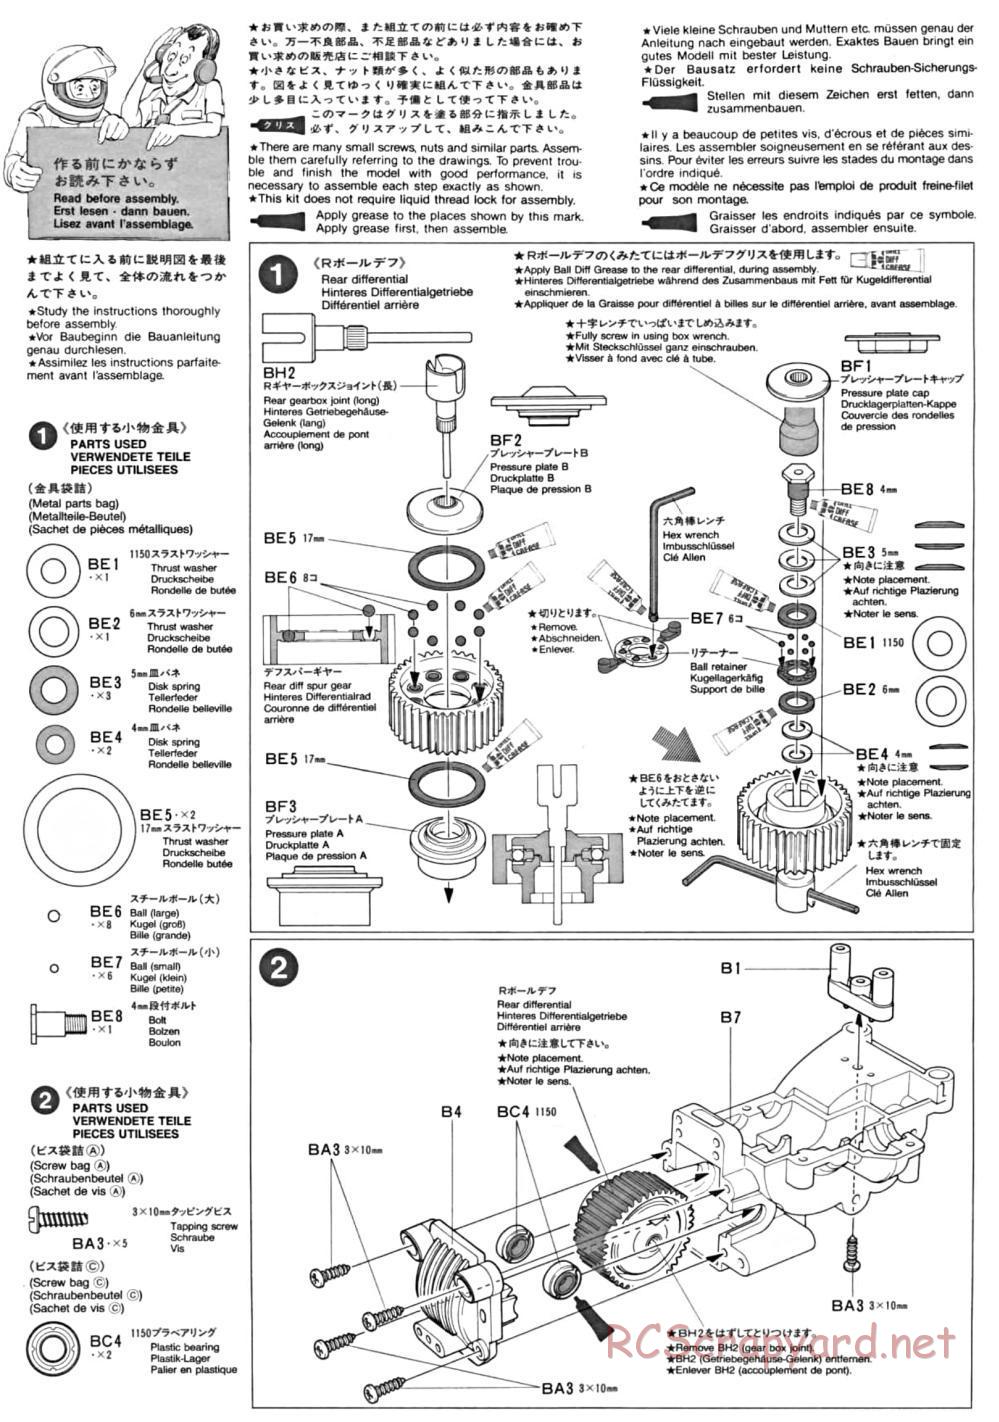 Tamiya - TA-01 Chassis - Manual - Page 1